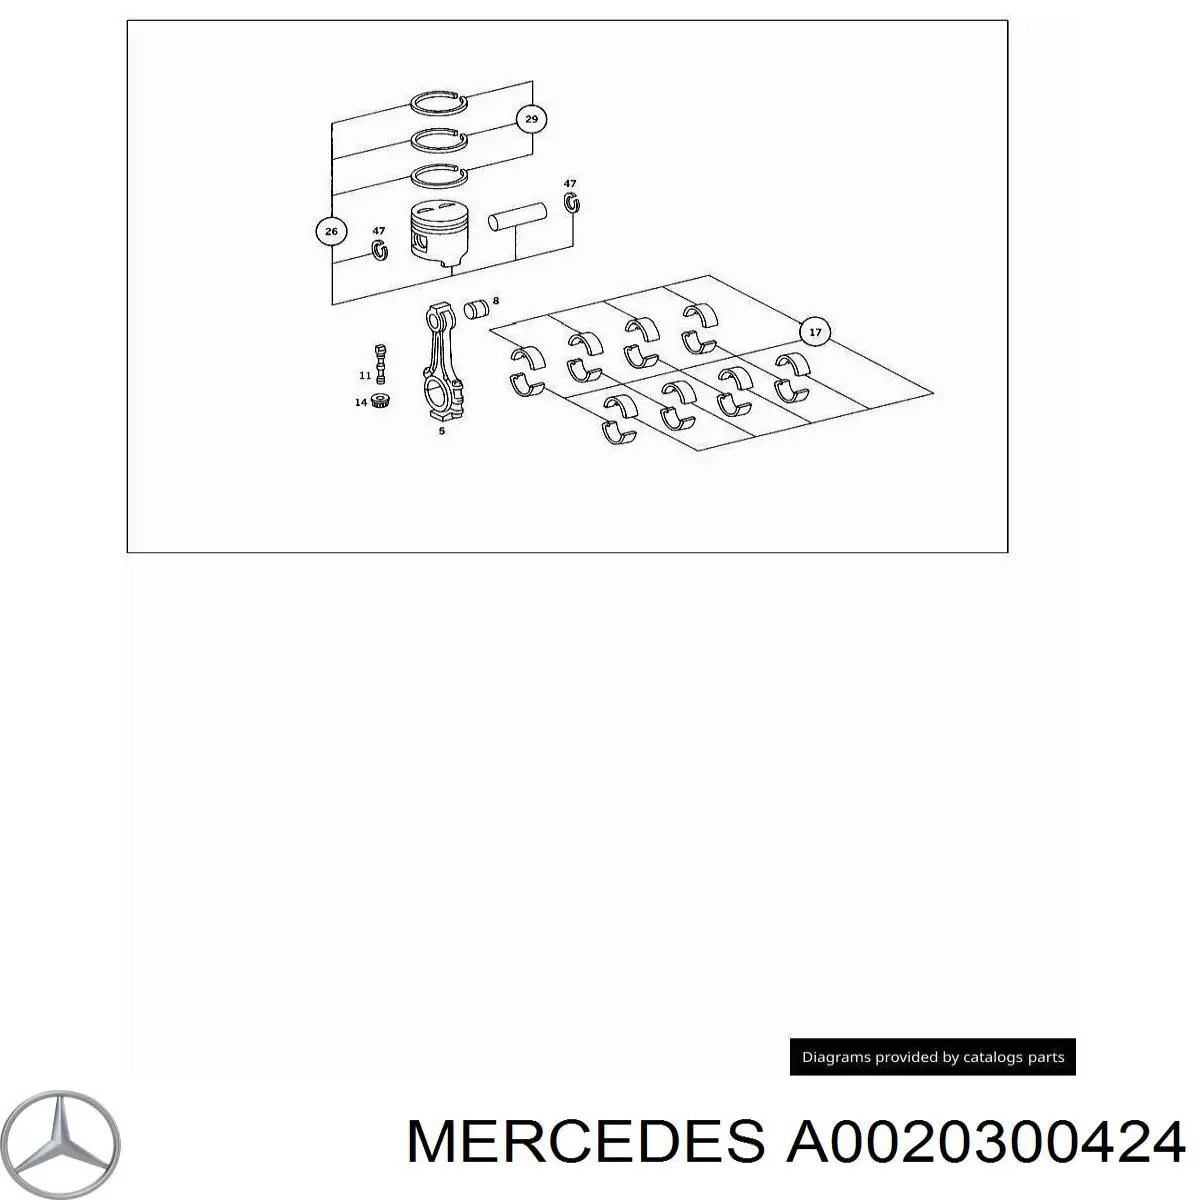 Кольца поршневые на 1 цилиндр, STD. Mercedes A0020300424